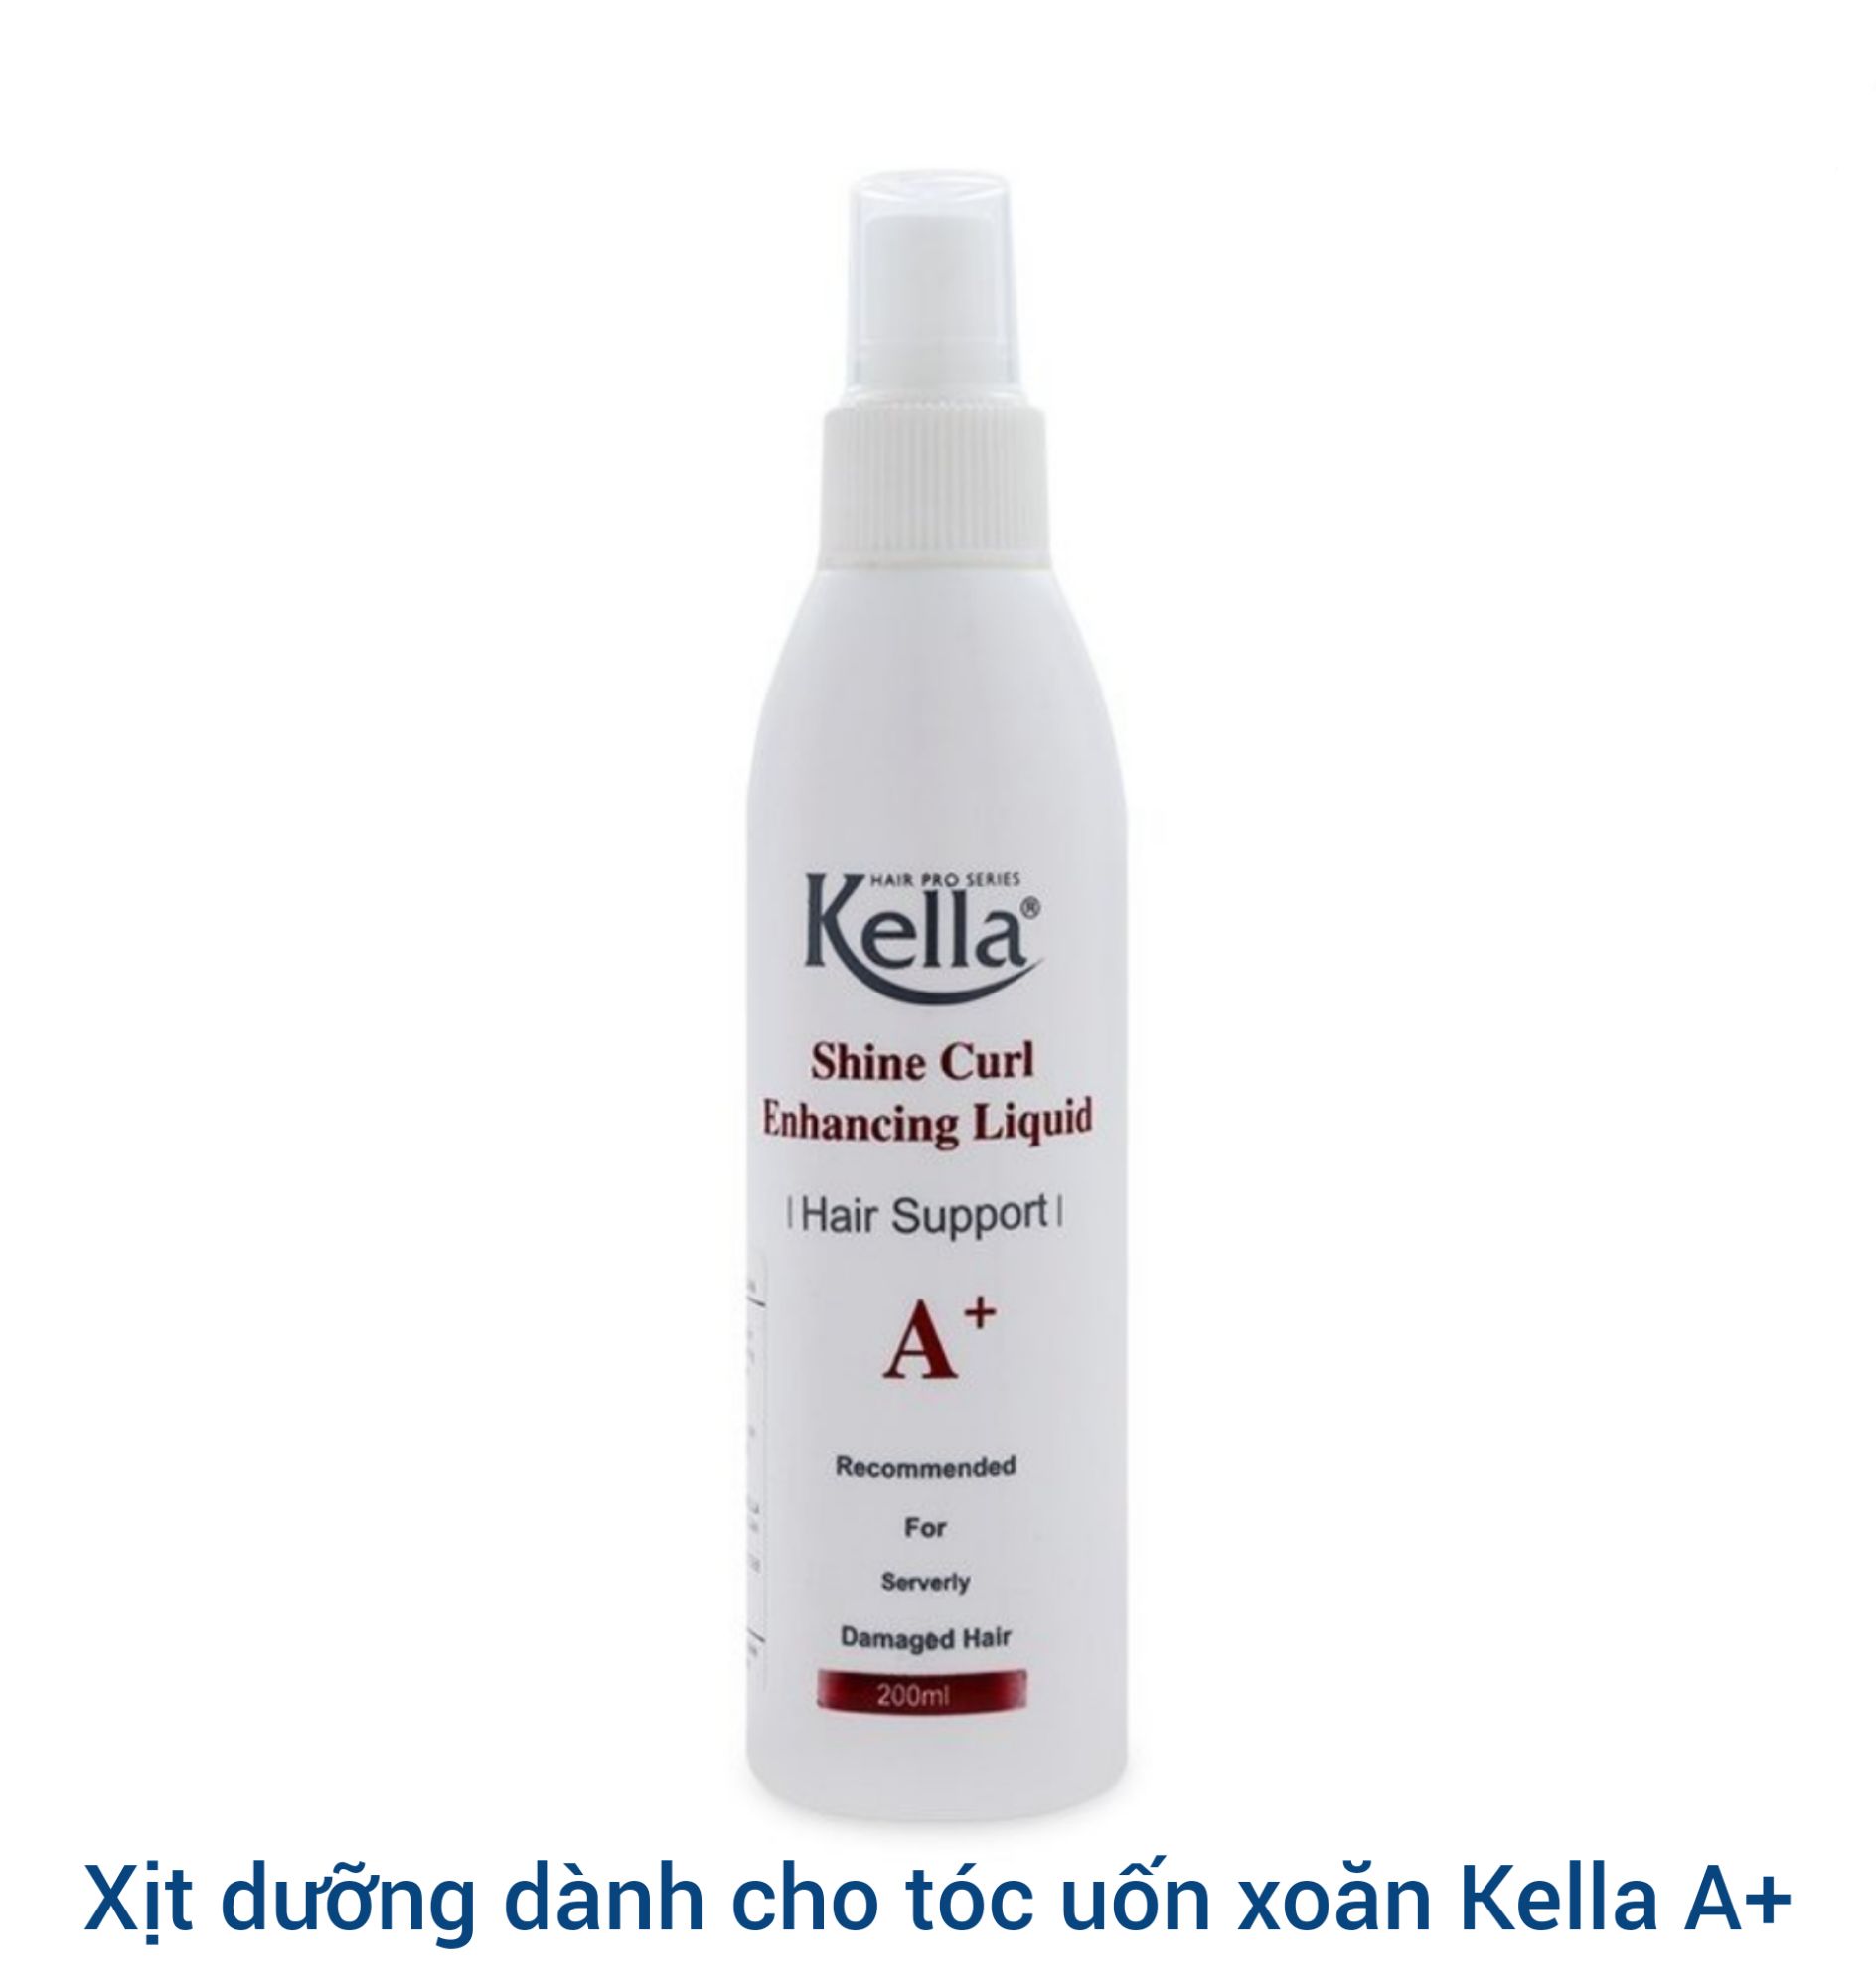 Sự kiện giảm giá Sữa dưỡng tóc xoăn, uốn Kella trên trang BeeCost đang rất được yêu thích bởi nhiều phụ nữ. Với công dụng giúp nuôi dưỡng và tạo độ uốn tự nhiên cho tóc, sản phẩm sẽ giúp mái tóc của bạn trở nên cực kỳ mượt mà và đẹp mắt. Đừng bỏ lỡ cơ hội sở hữu sản phẩm tốt với mức giá ưu đãi nhất nhé!